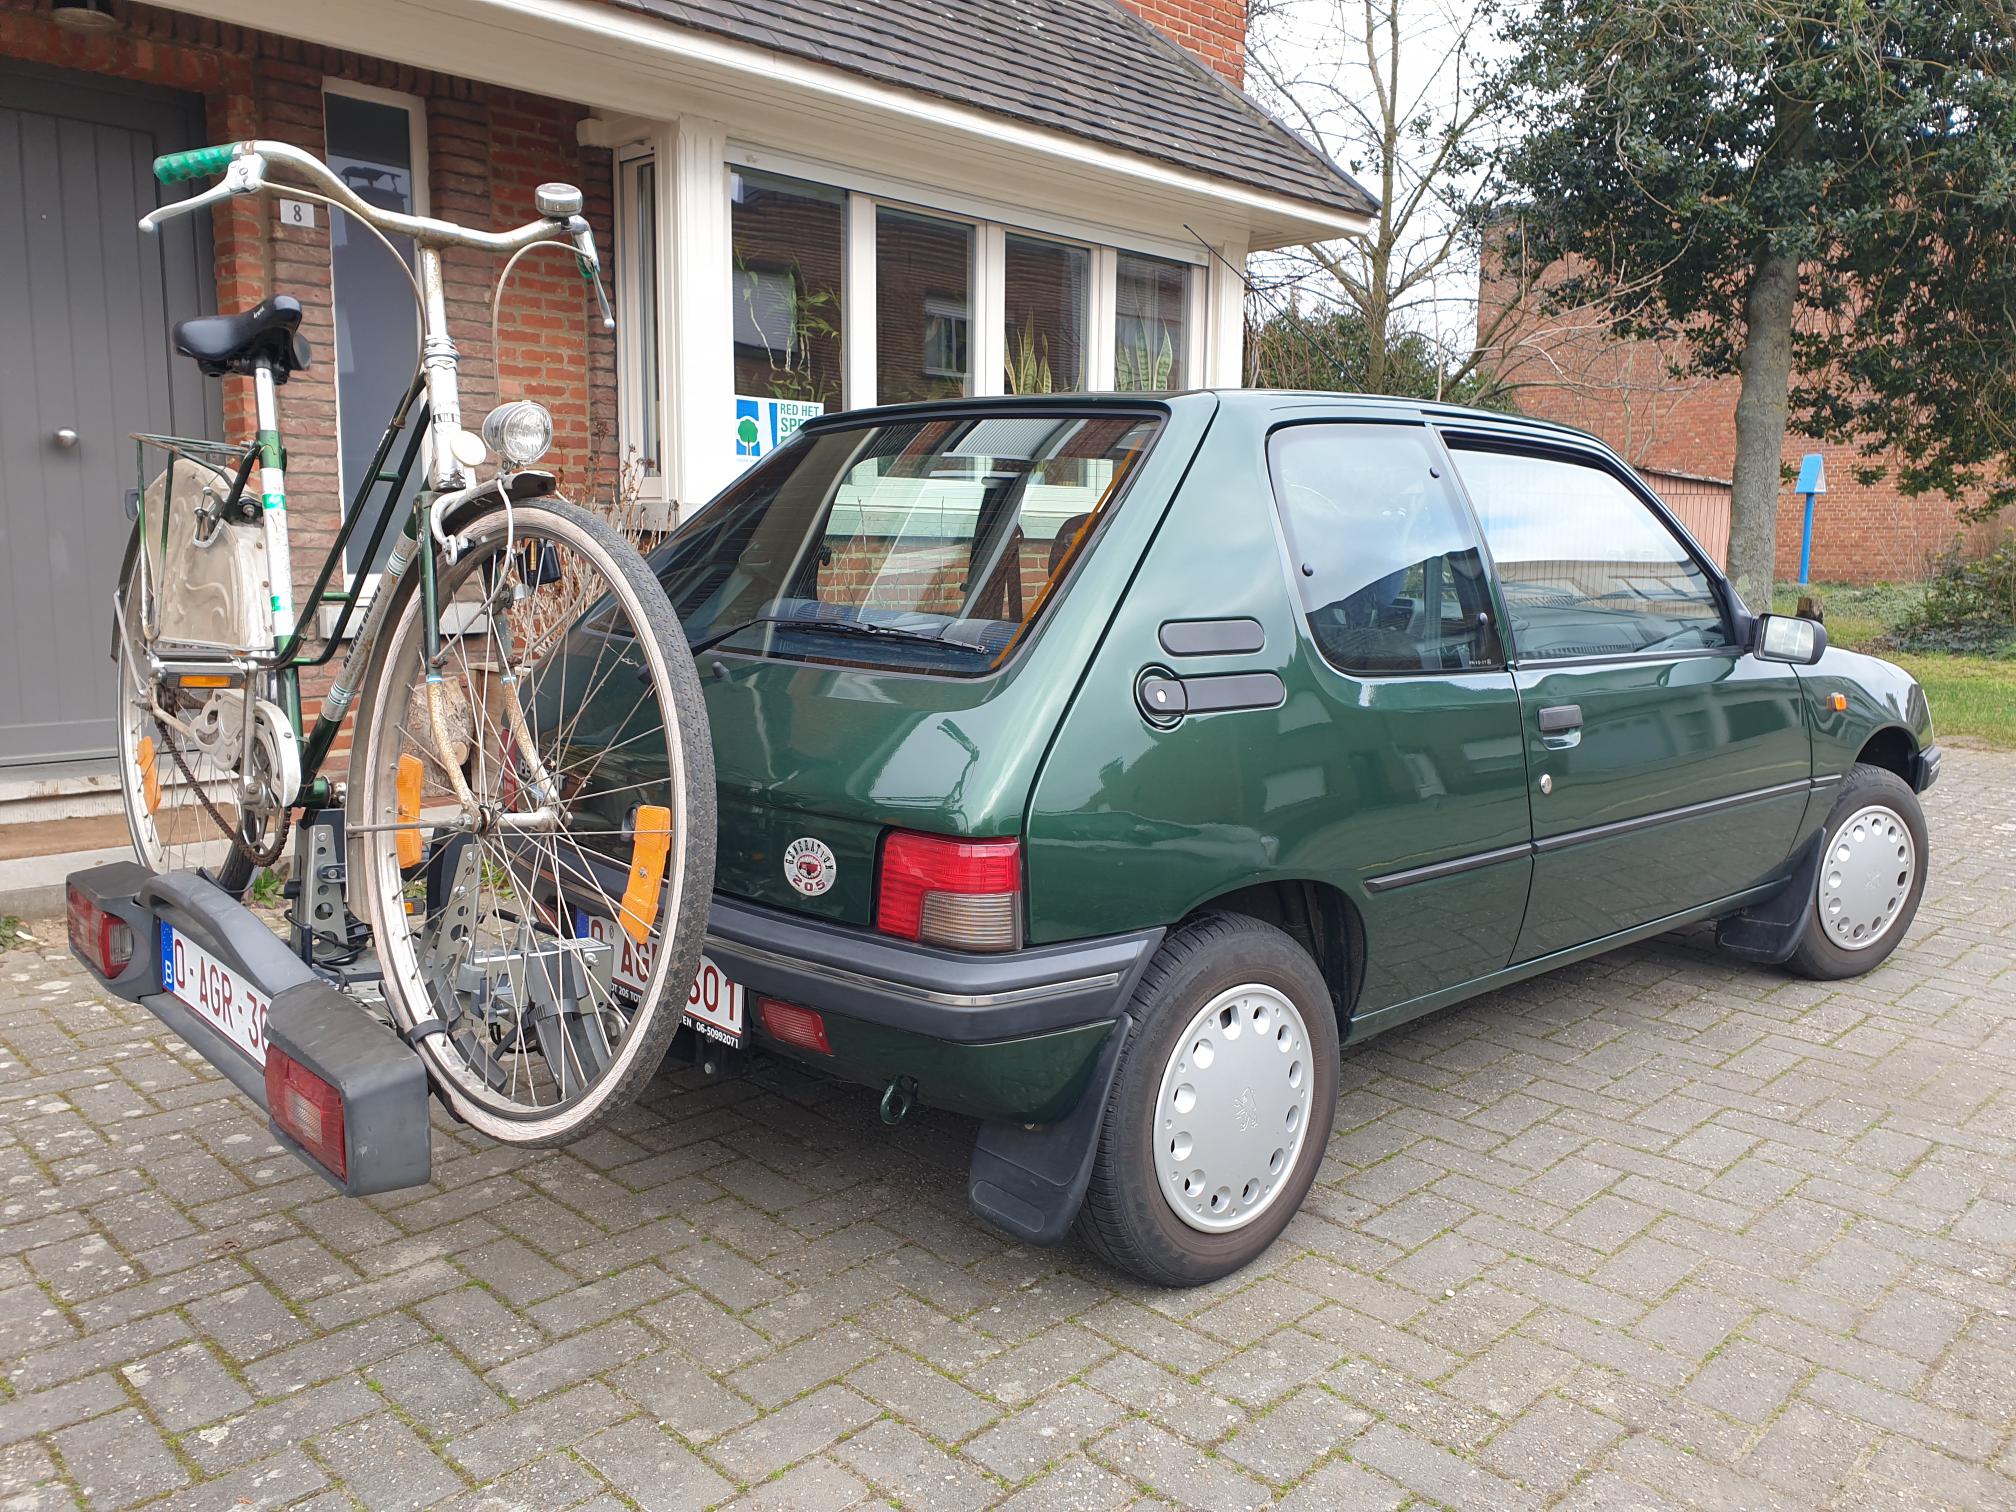 Peugeot met fiets.jpg